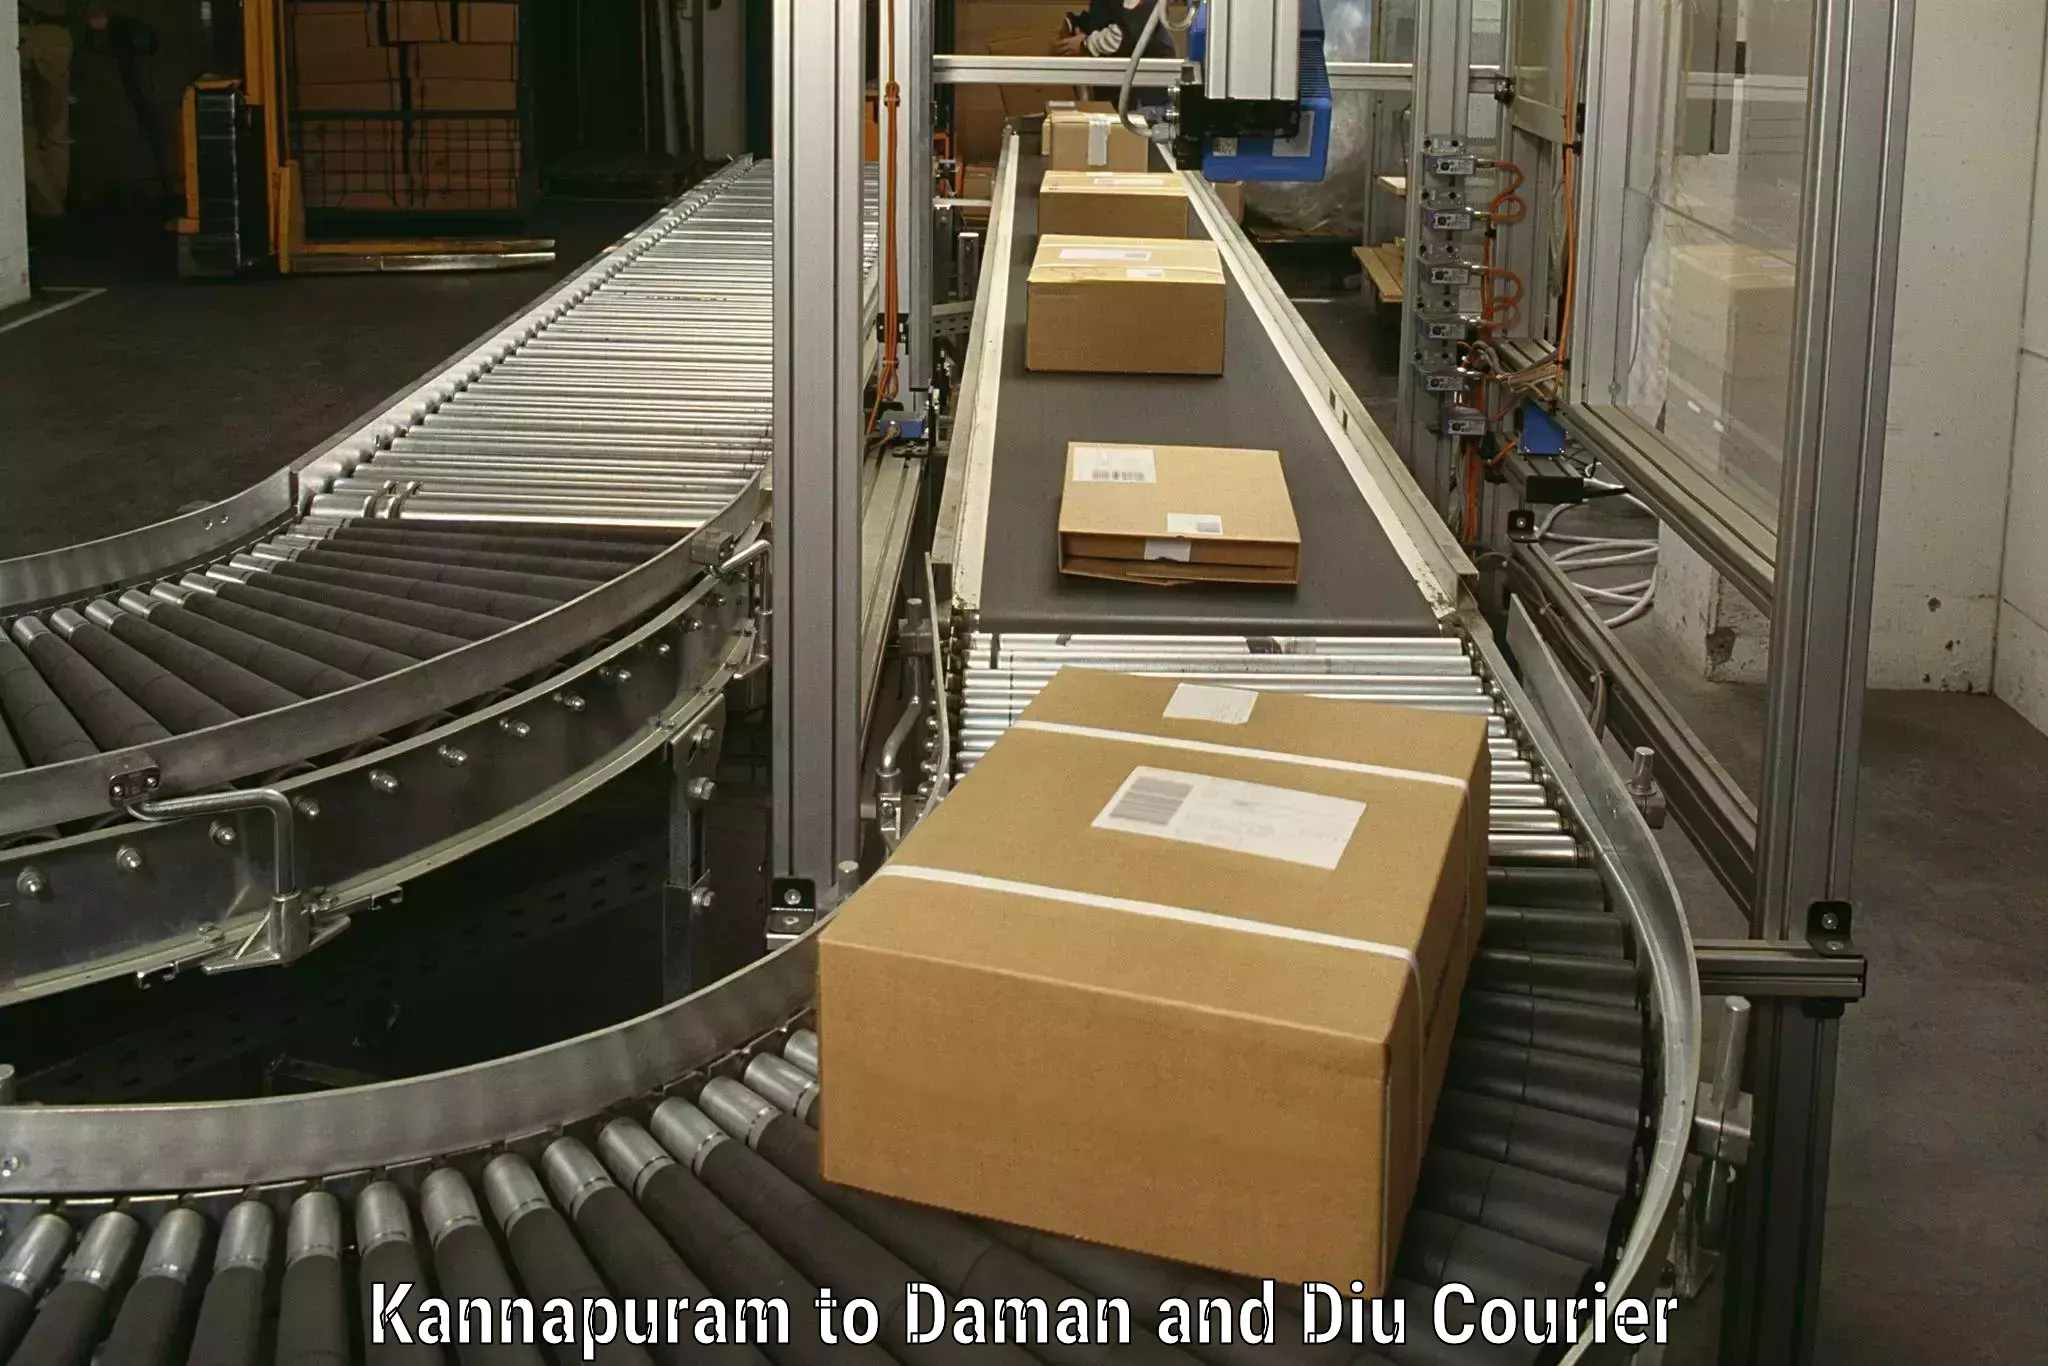 Furniture transport solutions Kannapuram to Daman and Diu